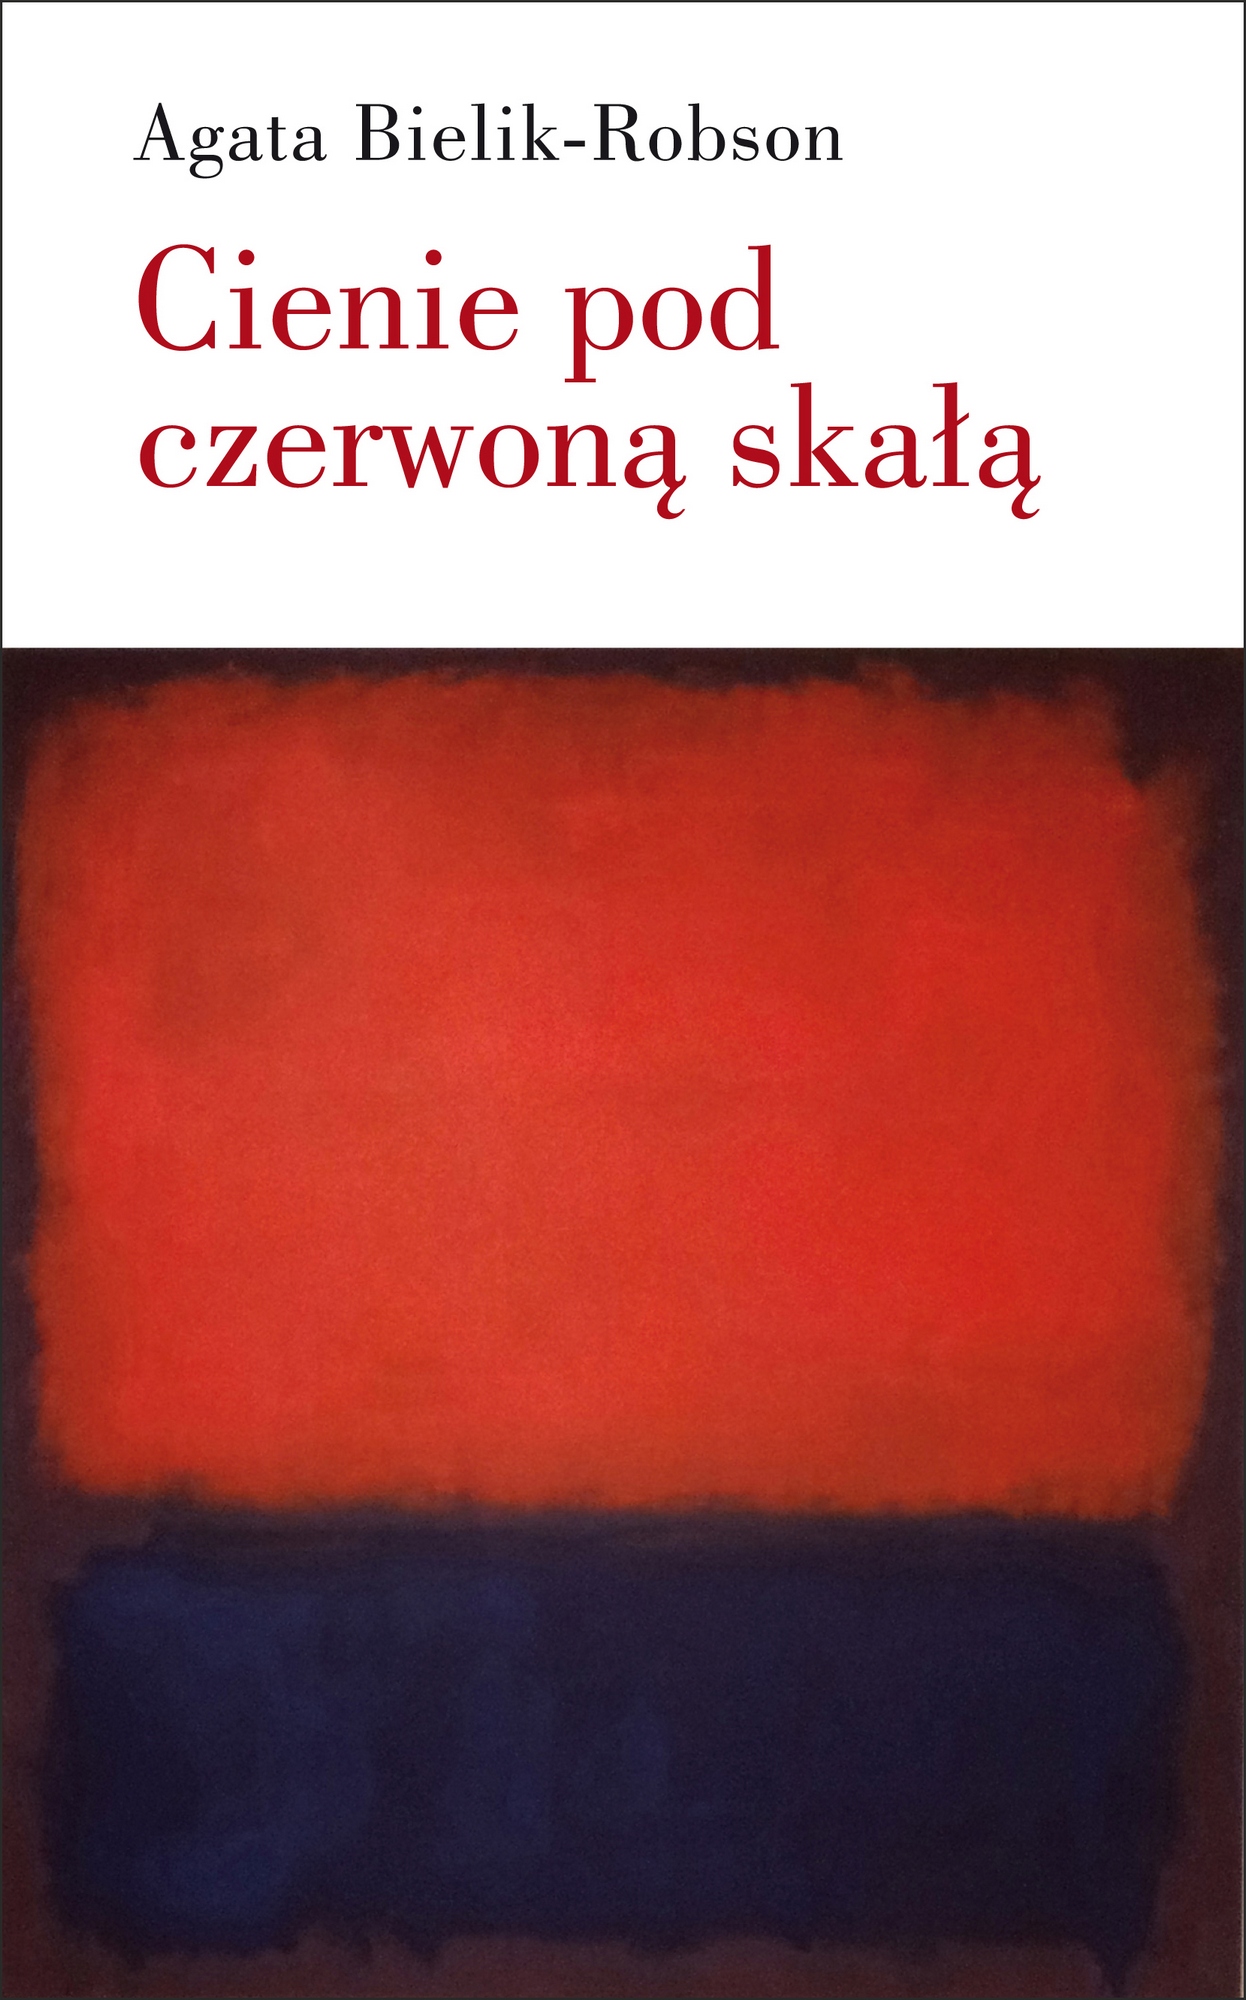 Agata Bielik-Robson, „Cienie pod czerwoną skałą. Eseje o literaturze” – okładka (źródło: materiały prasowe)